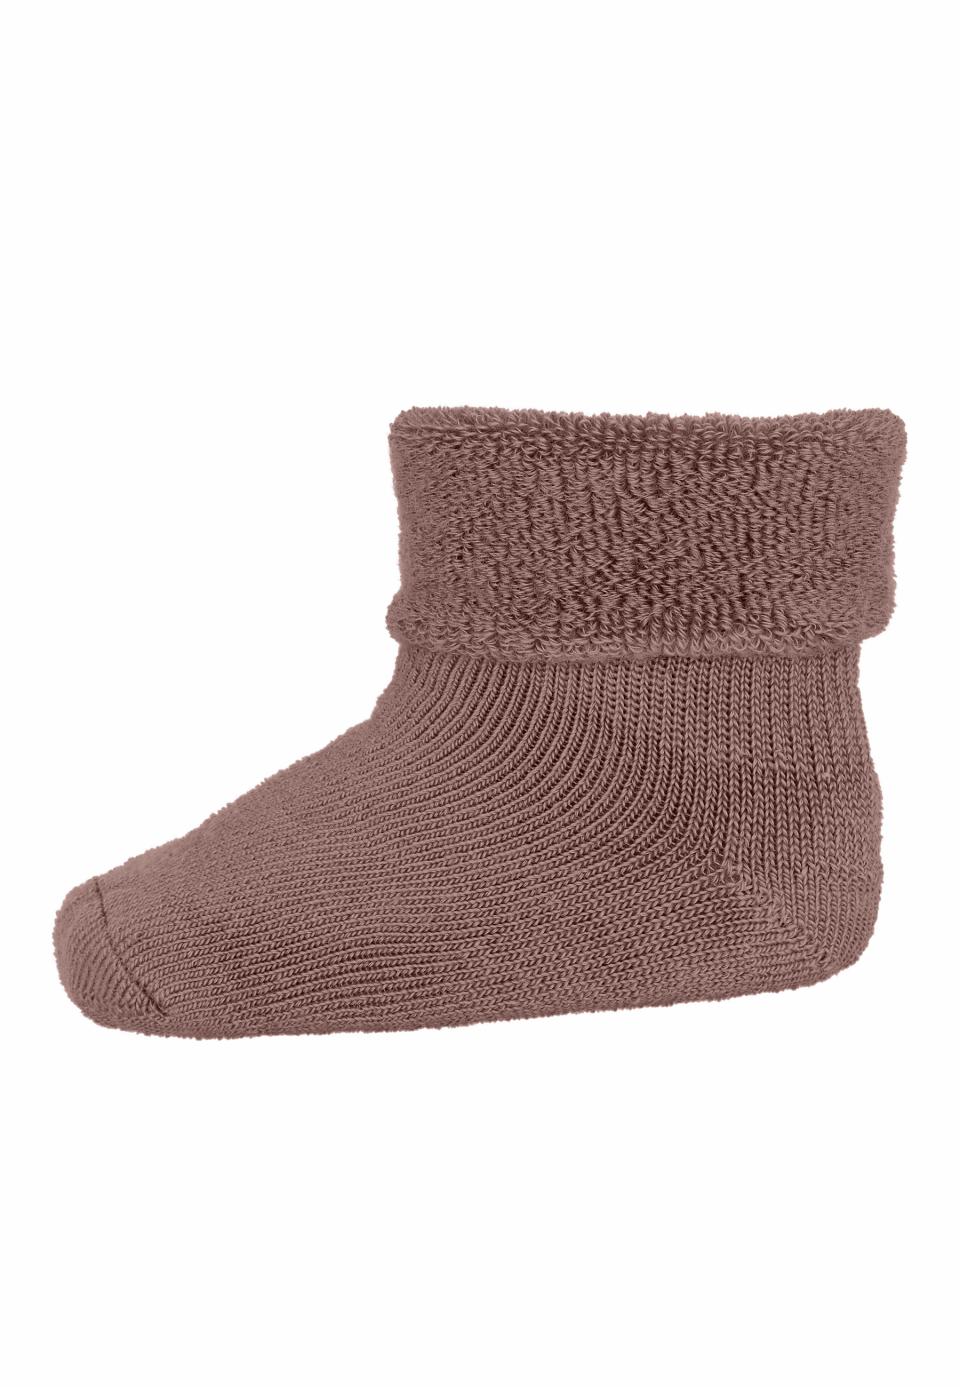 MP Denmark - Wool/cotton socks - Brown Sienna